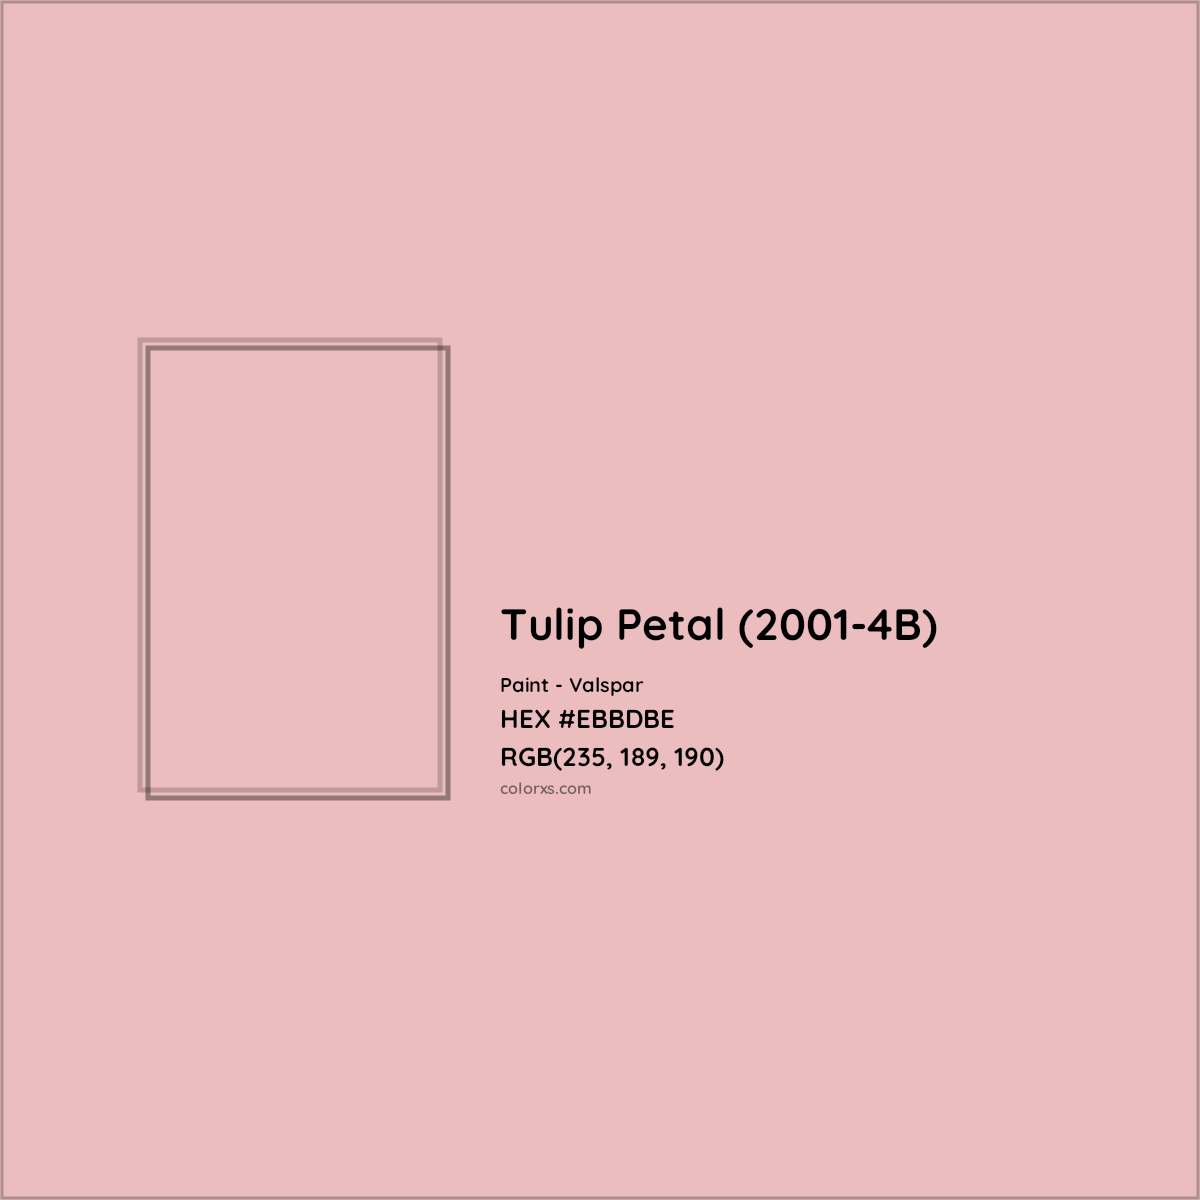 HEX #EBBDBE Tulip Petal (2001-4B) Paint Valspar - Color Code